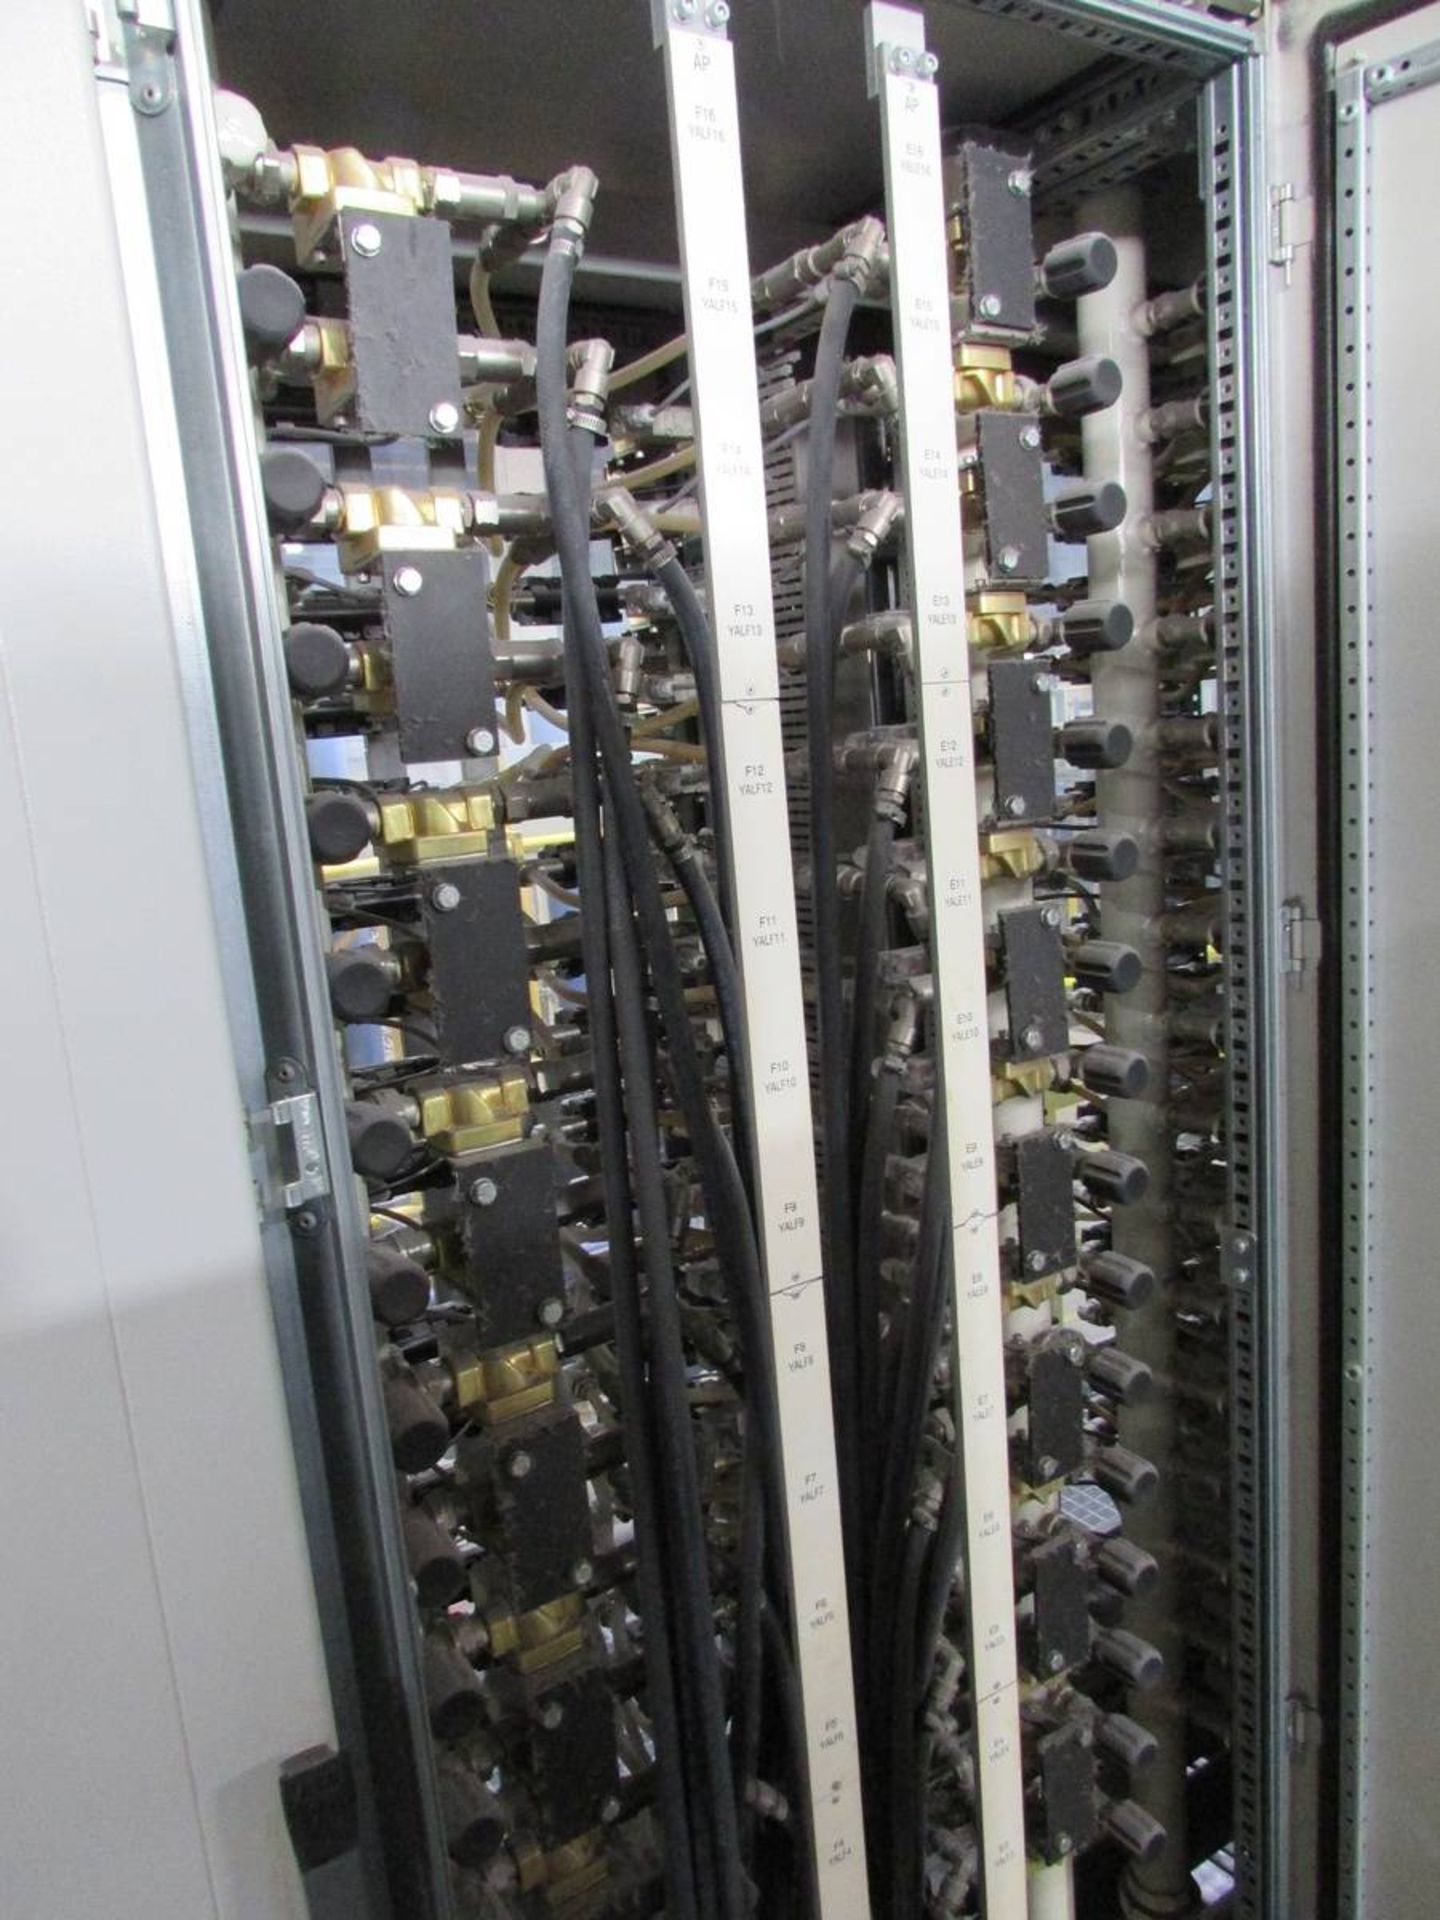 2018 Ilinden CPC 1600 C96 Counter Pressure Casting Machine - Image 21 of 24